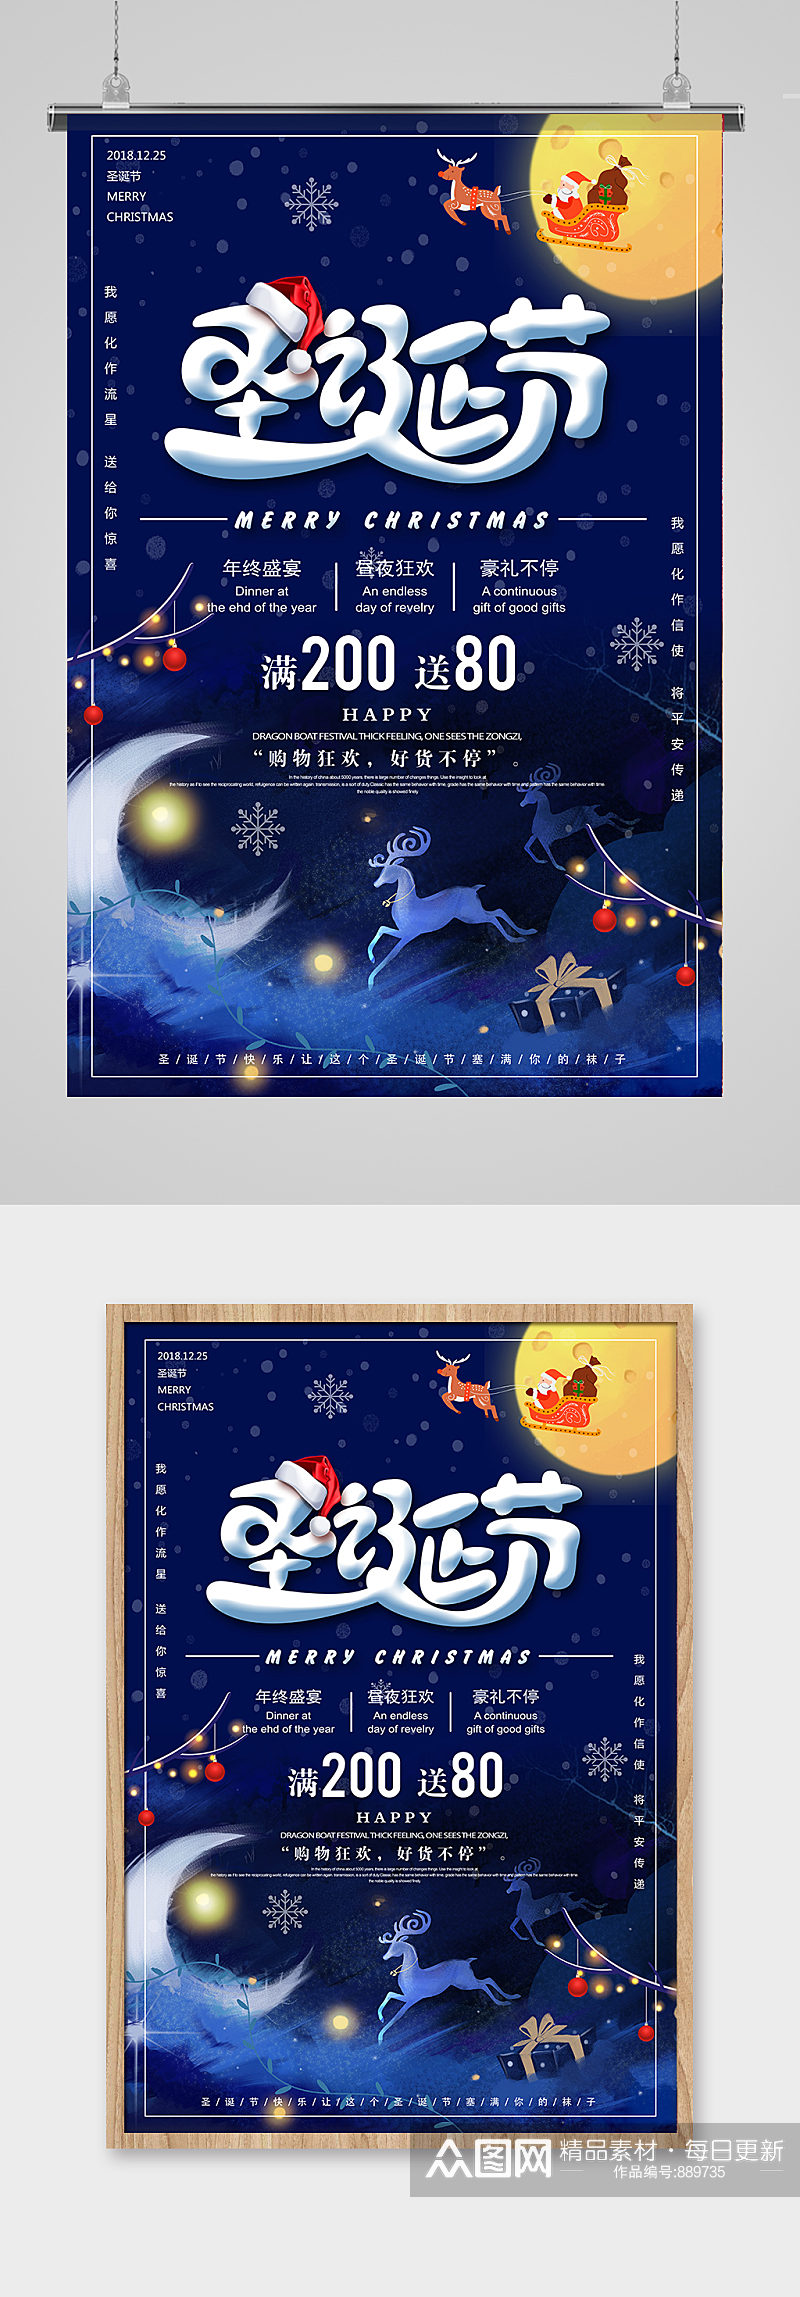 圣诞节蓝色风格圣诞节促销海报创意设计素材